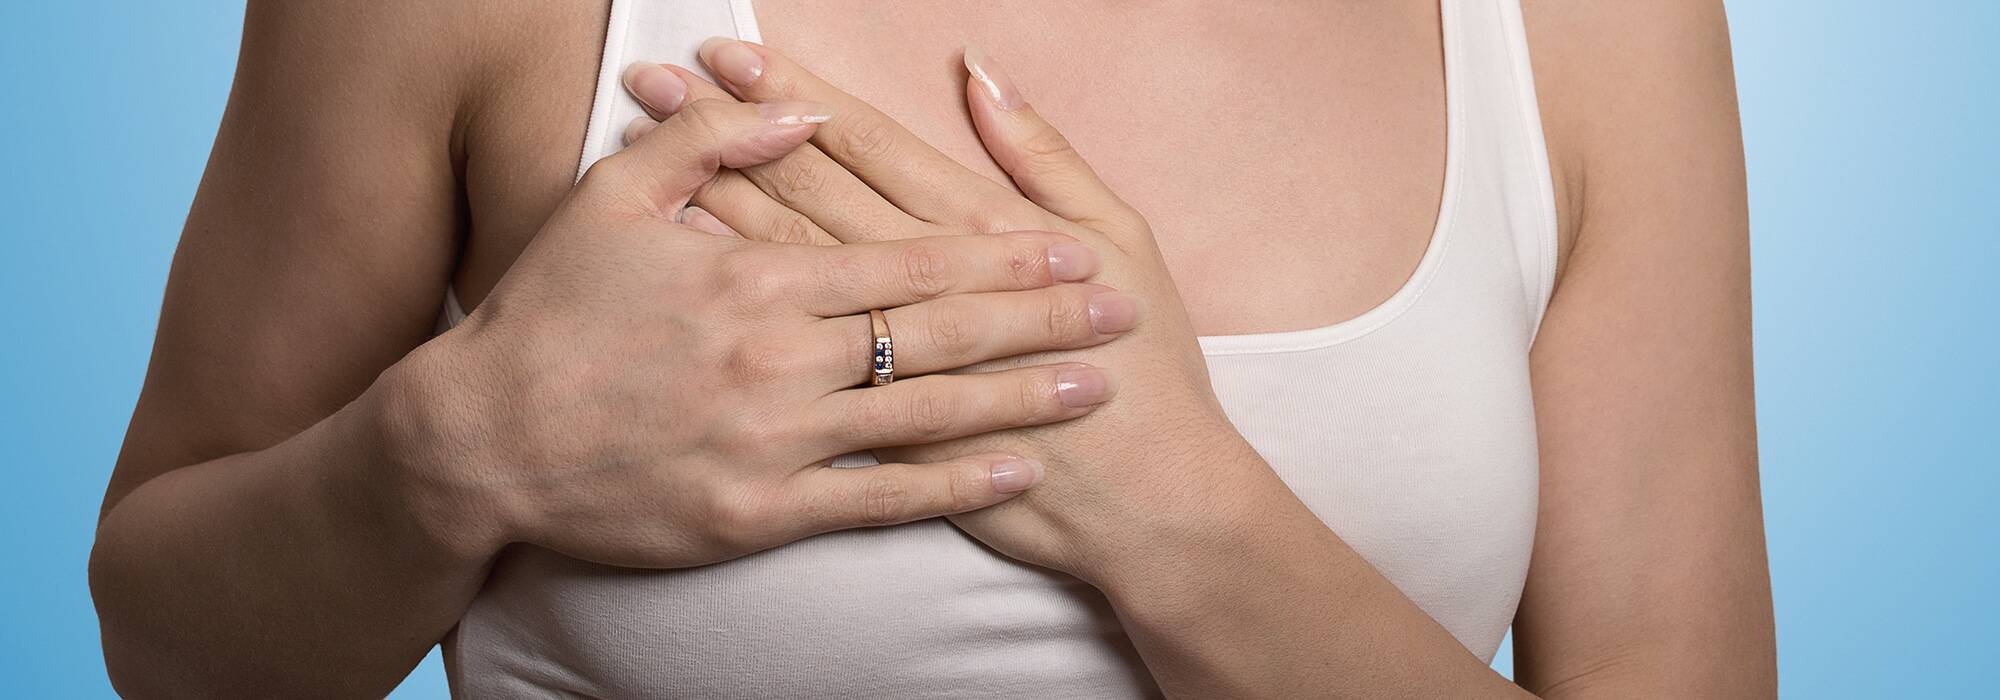 Почему болит грудь при кормлении – причины и способы лечения